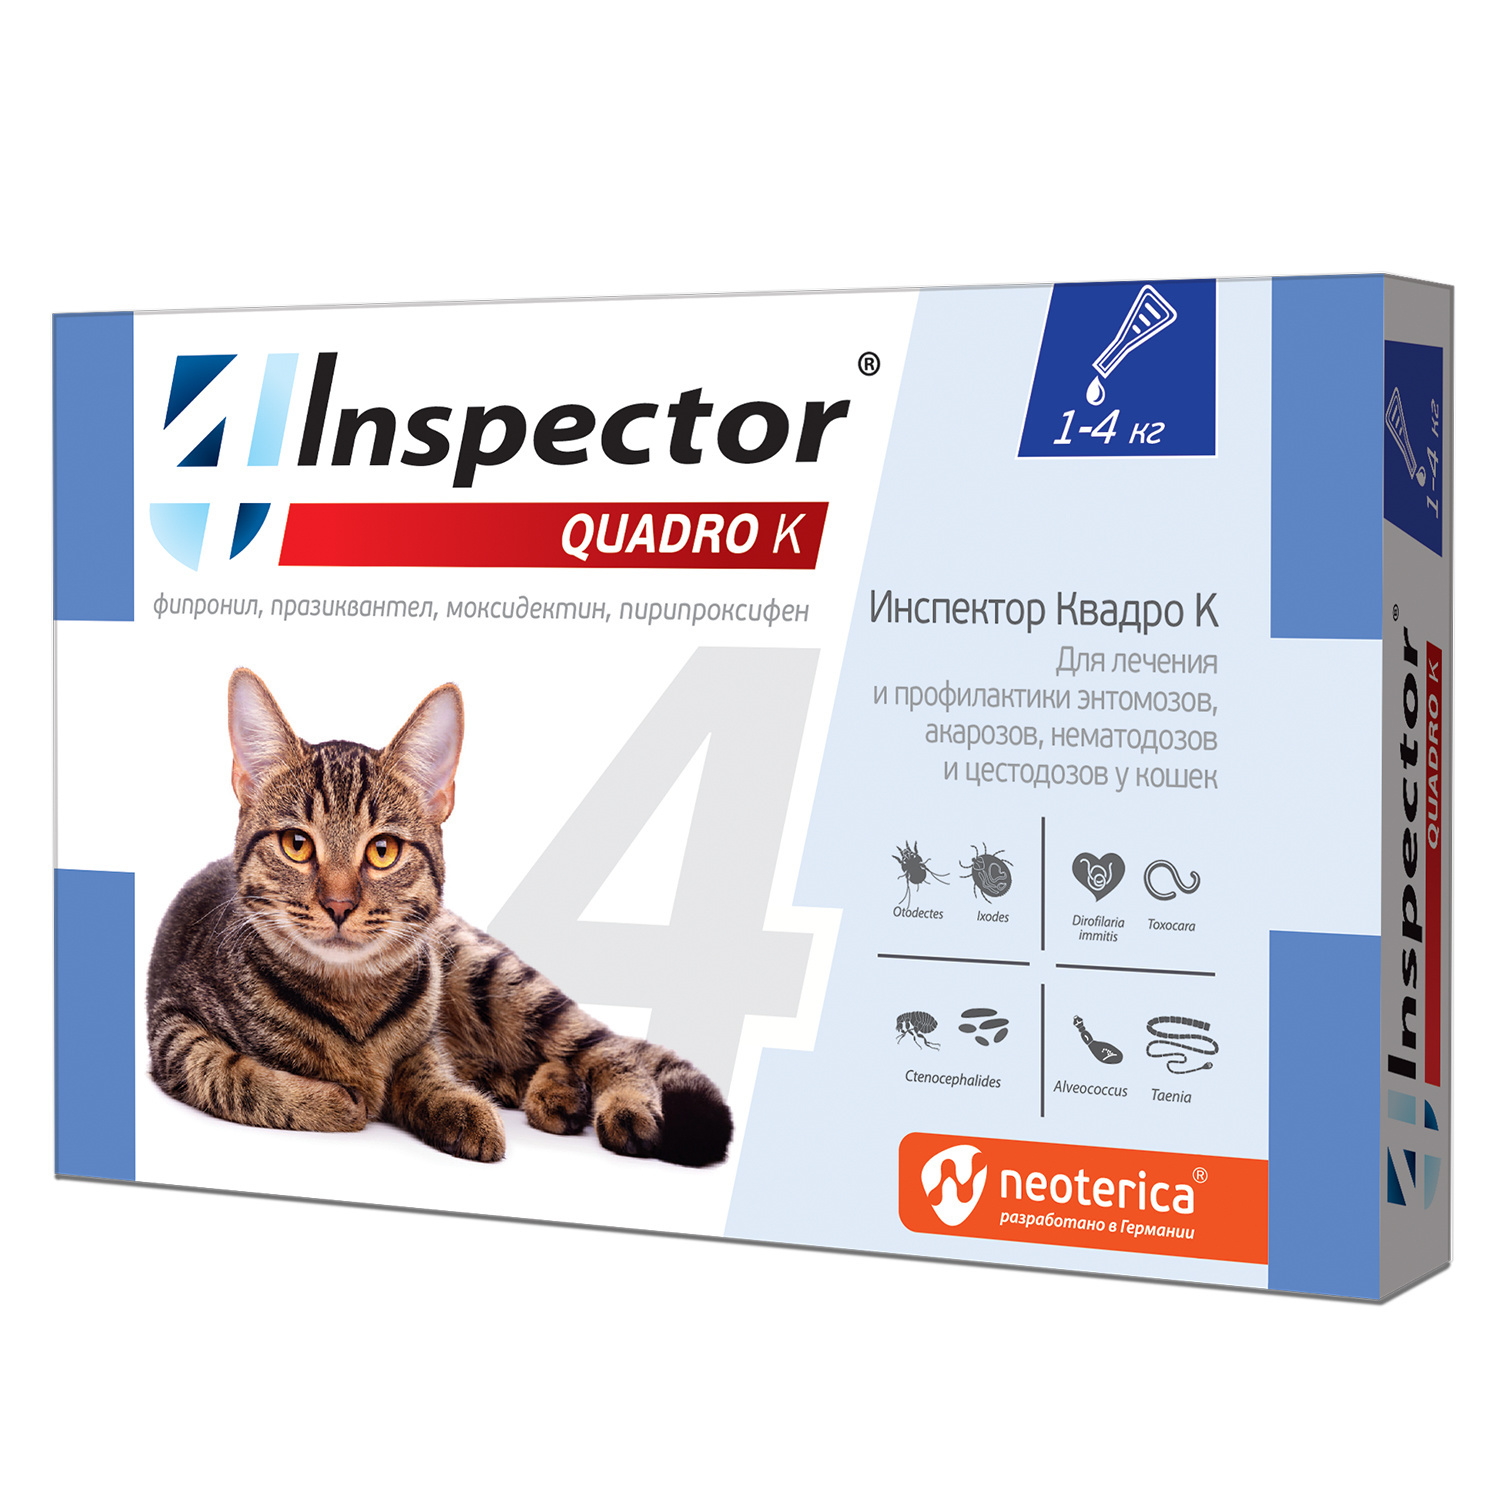 цена Inspector Inspector quadro капли на холку для кошек 1-4 кг, от глистов, насекомых, клещей (180 г)